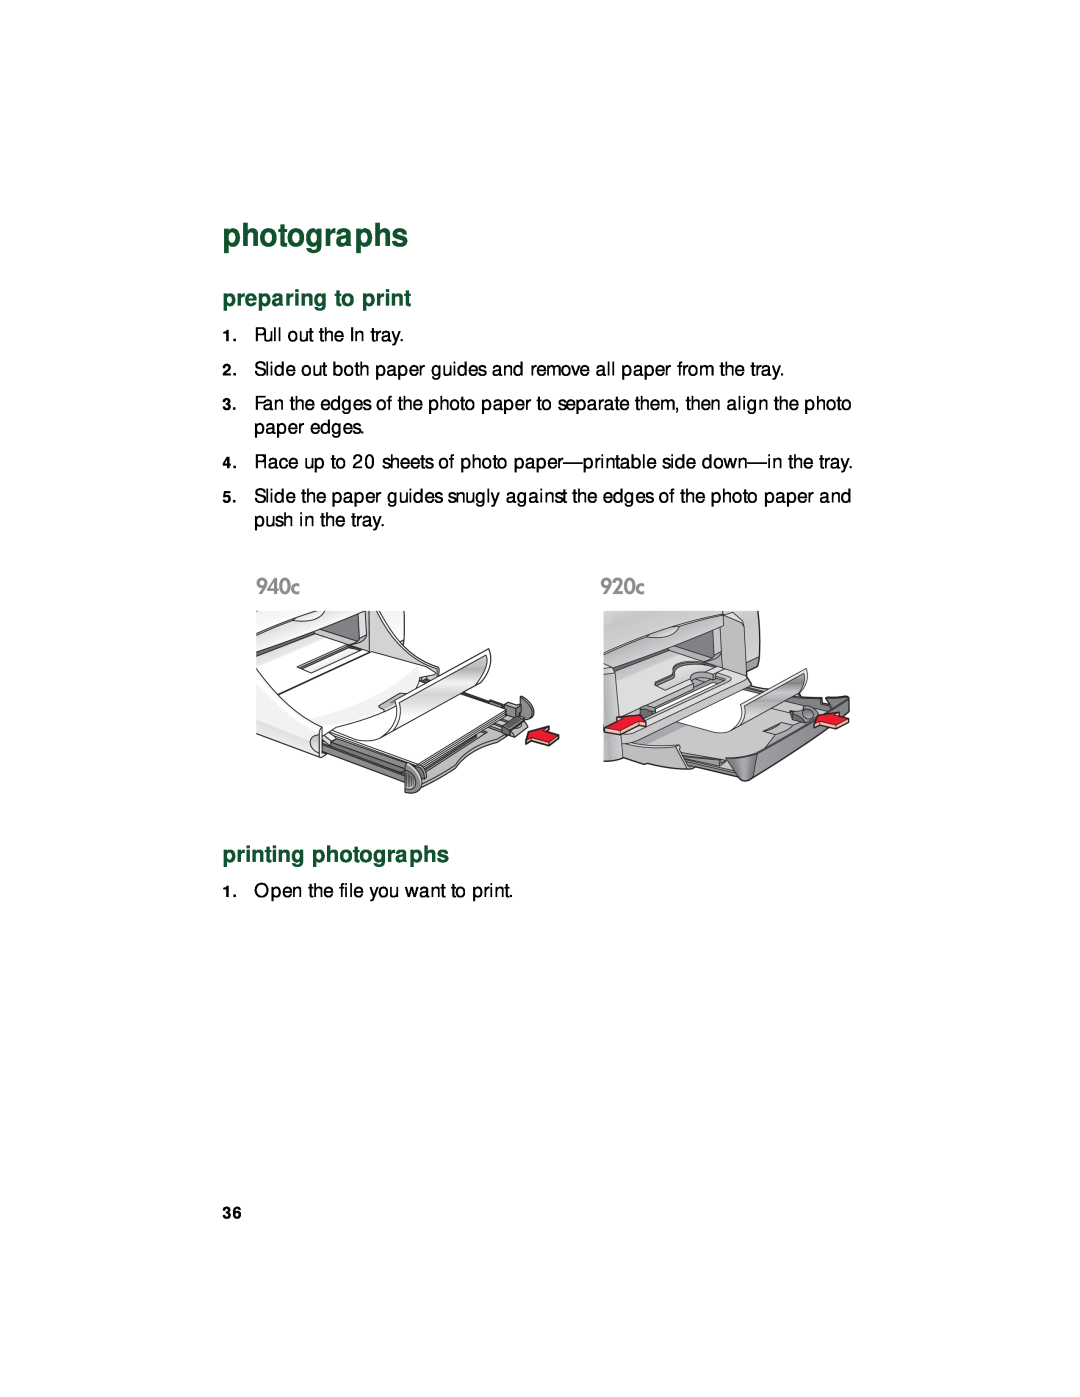 HP 940c, 920c, 948c manual printing photographs, preparing to print 